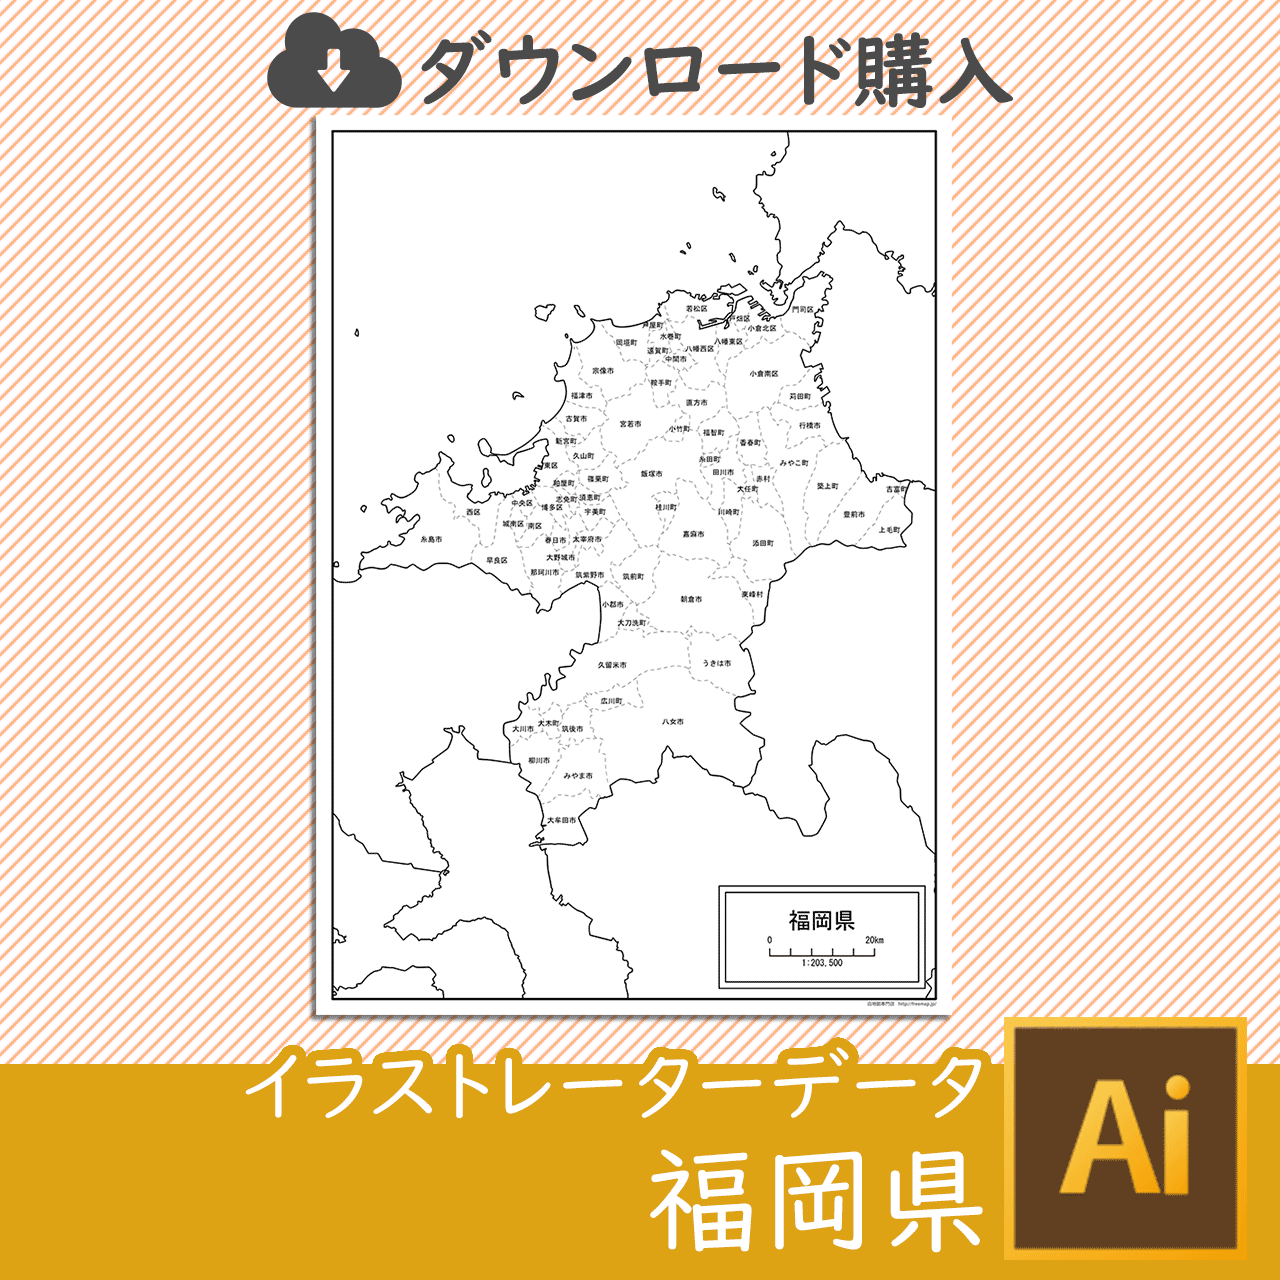 福岡県の白地図のサムネイル